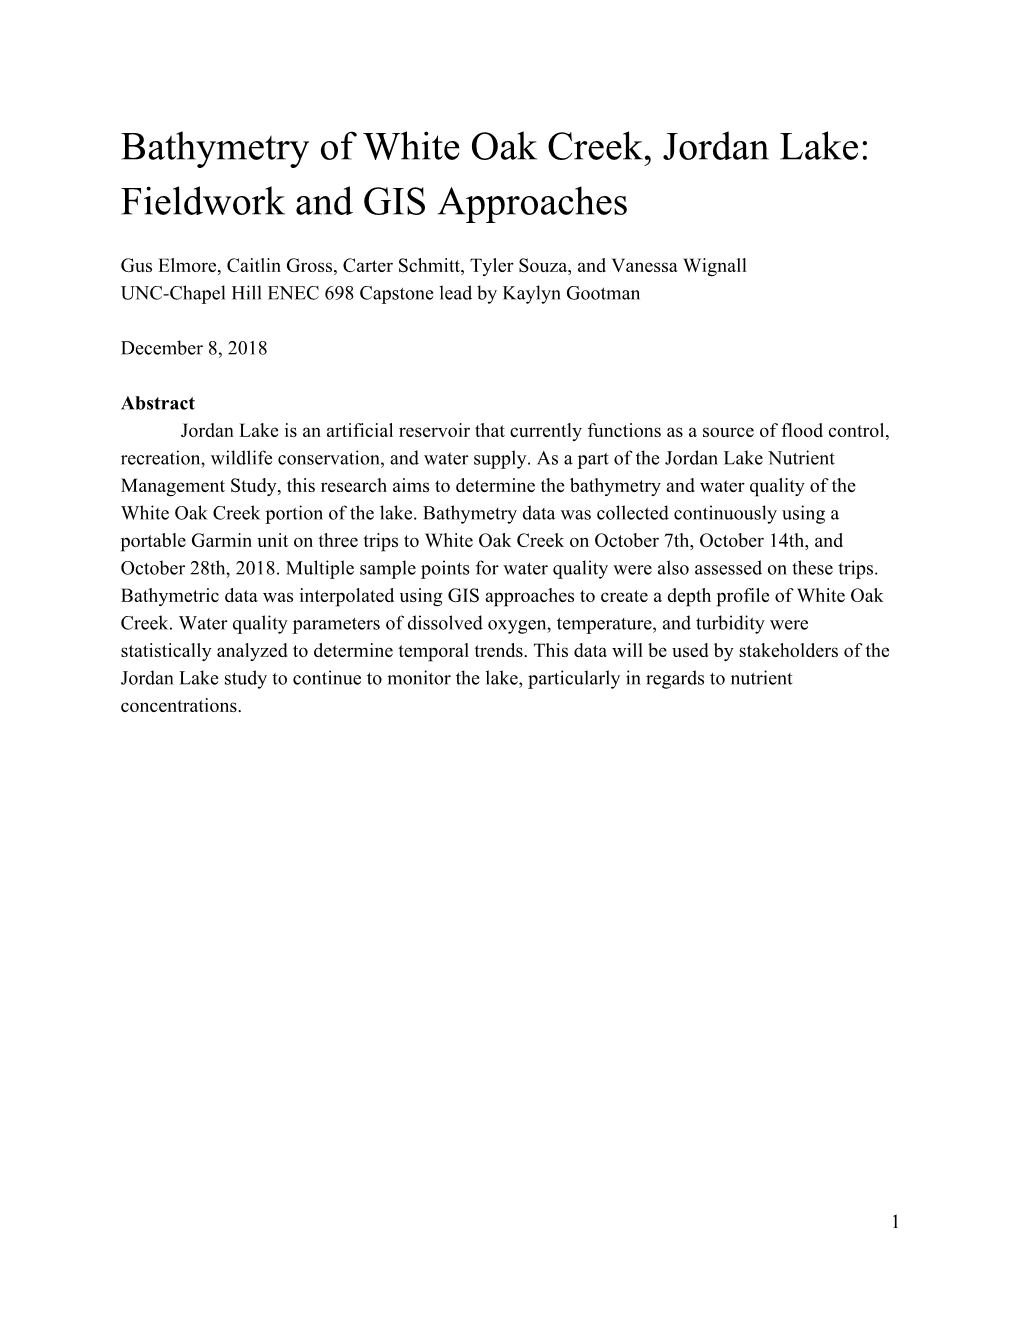 Bathymetry of White Oak Creek, Jordan Lake: Fieldwork and GIS Approaches